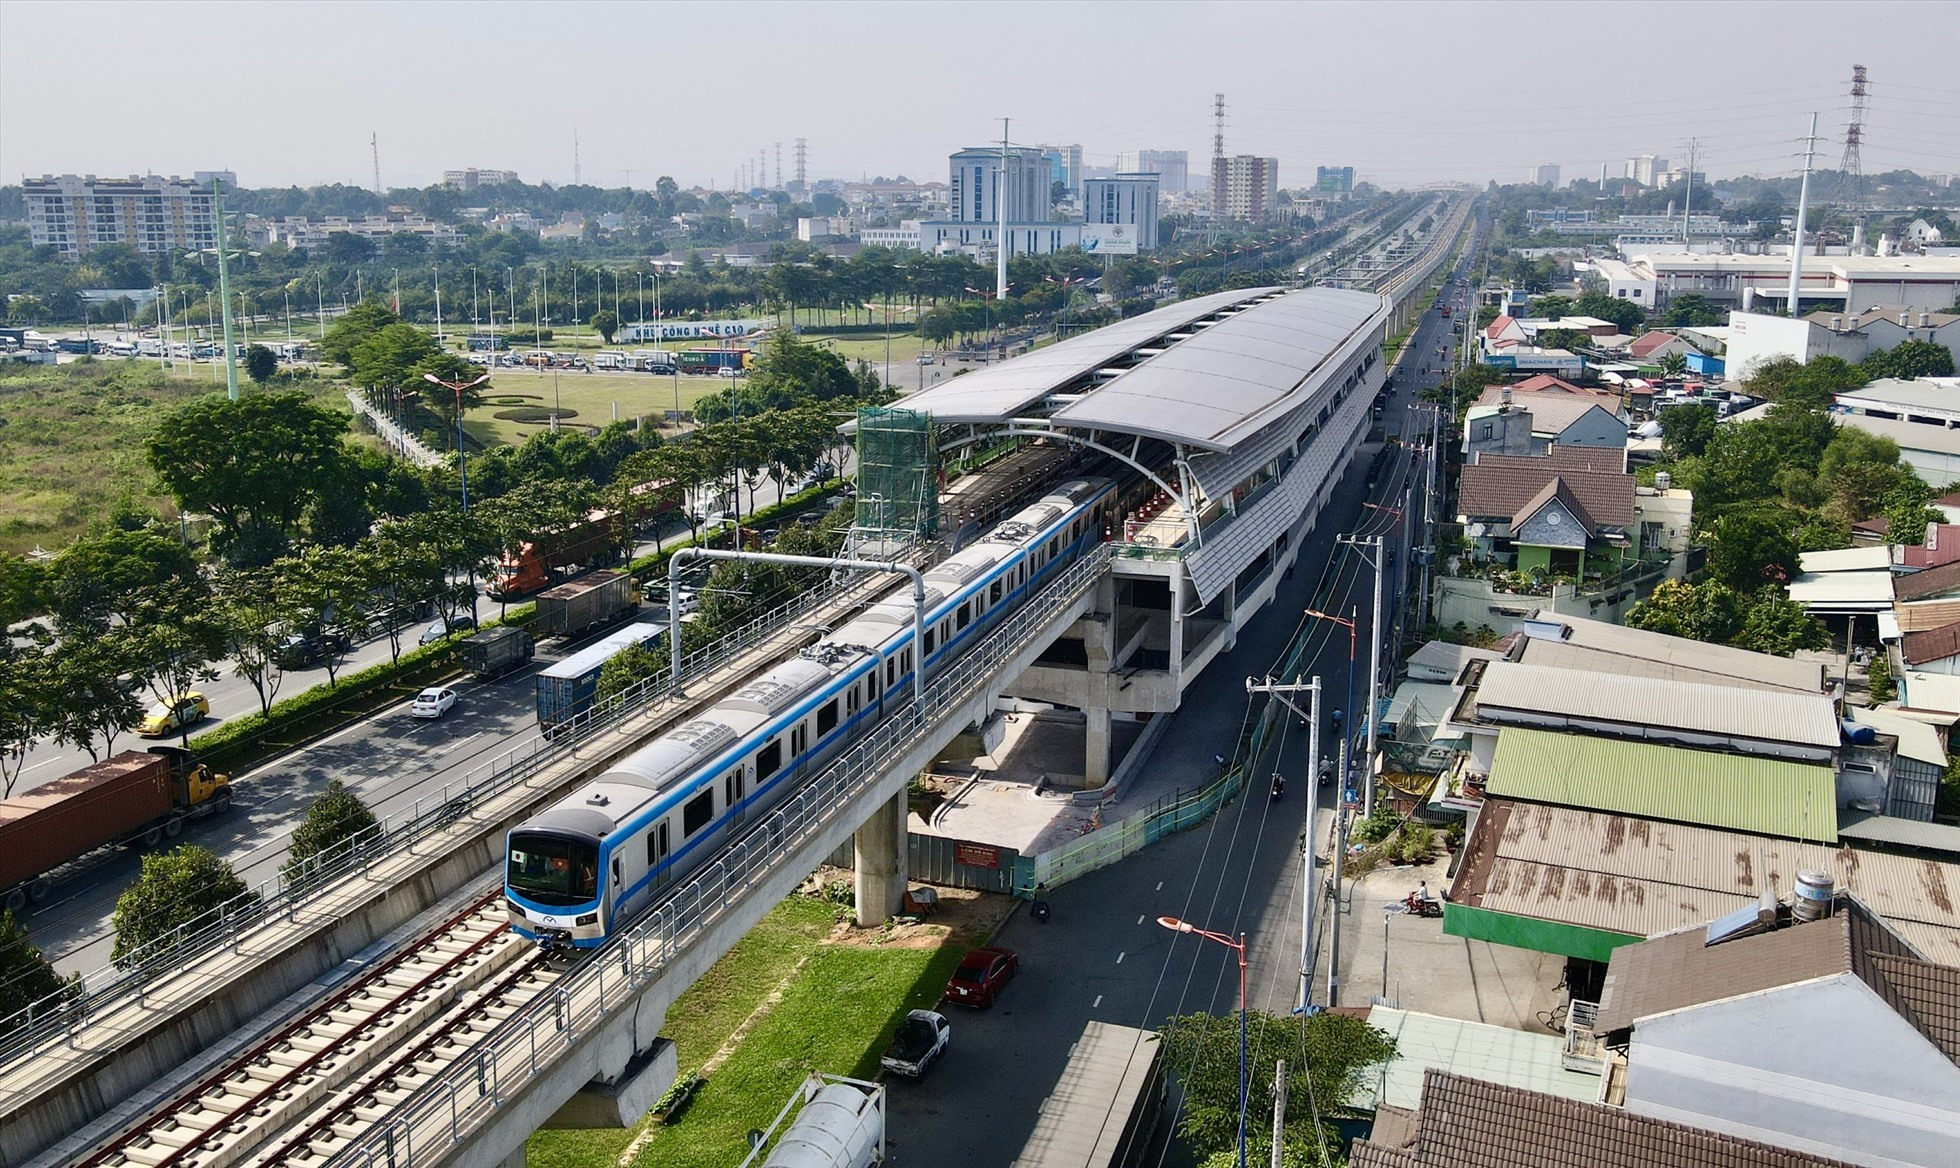 Metro số 1 (Bến Thành – Suối Tiên) là dự án đường sắt đô thị đầu tiên ở TP Hô Chí Minh, với tổng mức đầu tư hơn 43.700 tỉ đồng. Dự án khởi công công năm 2012. hiện đạt gần 95%, dự kiến hoàn thành cuối năm 2023.